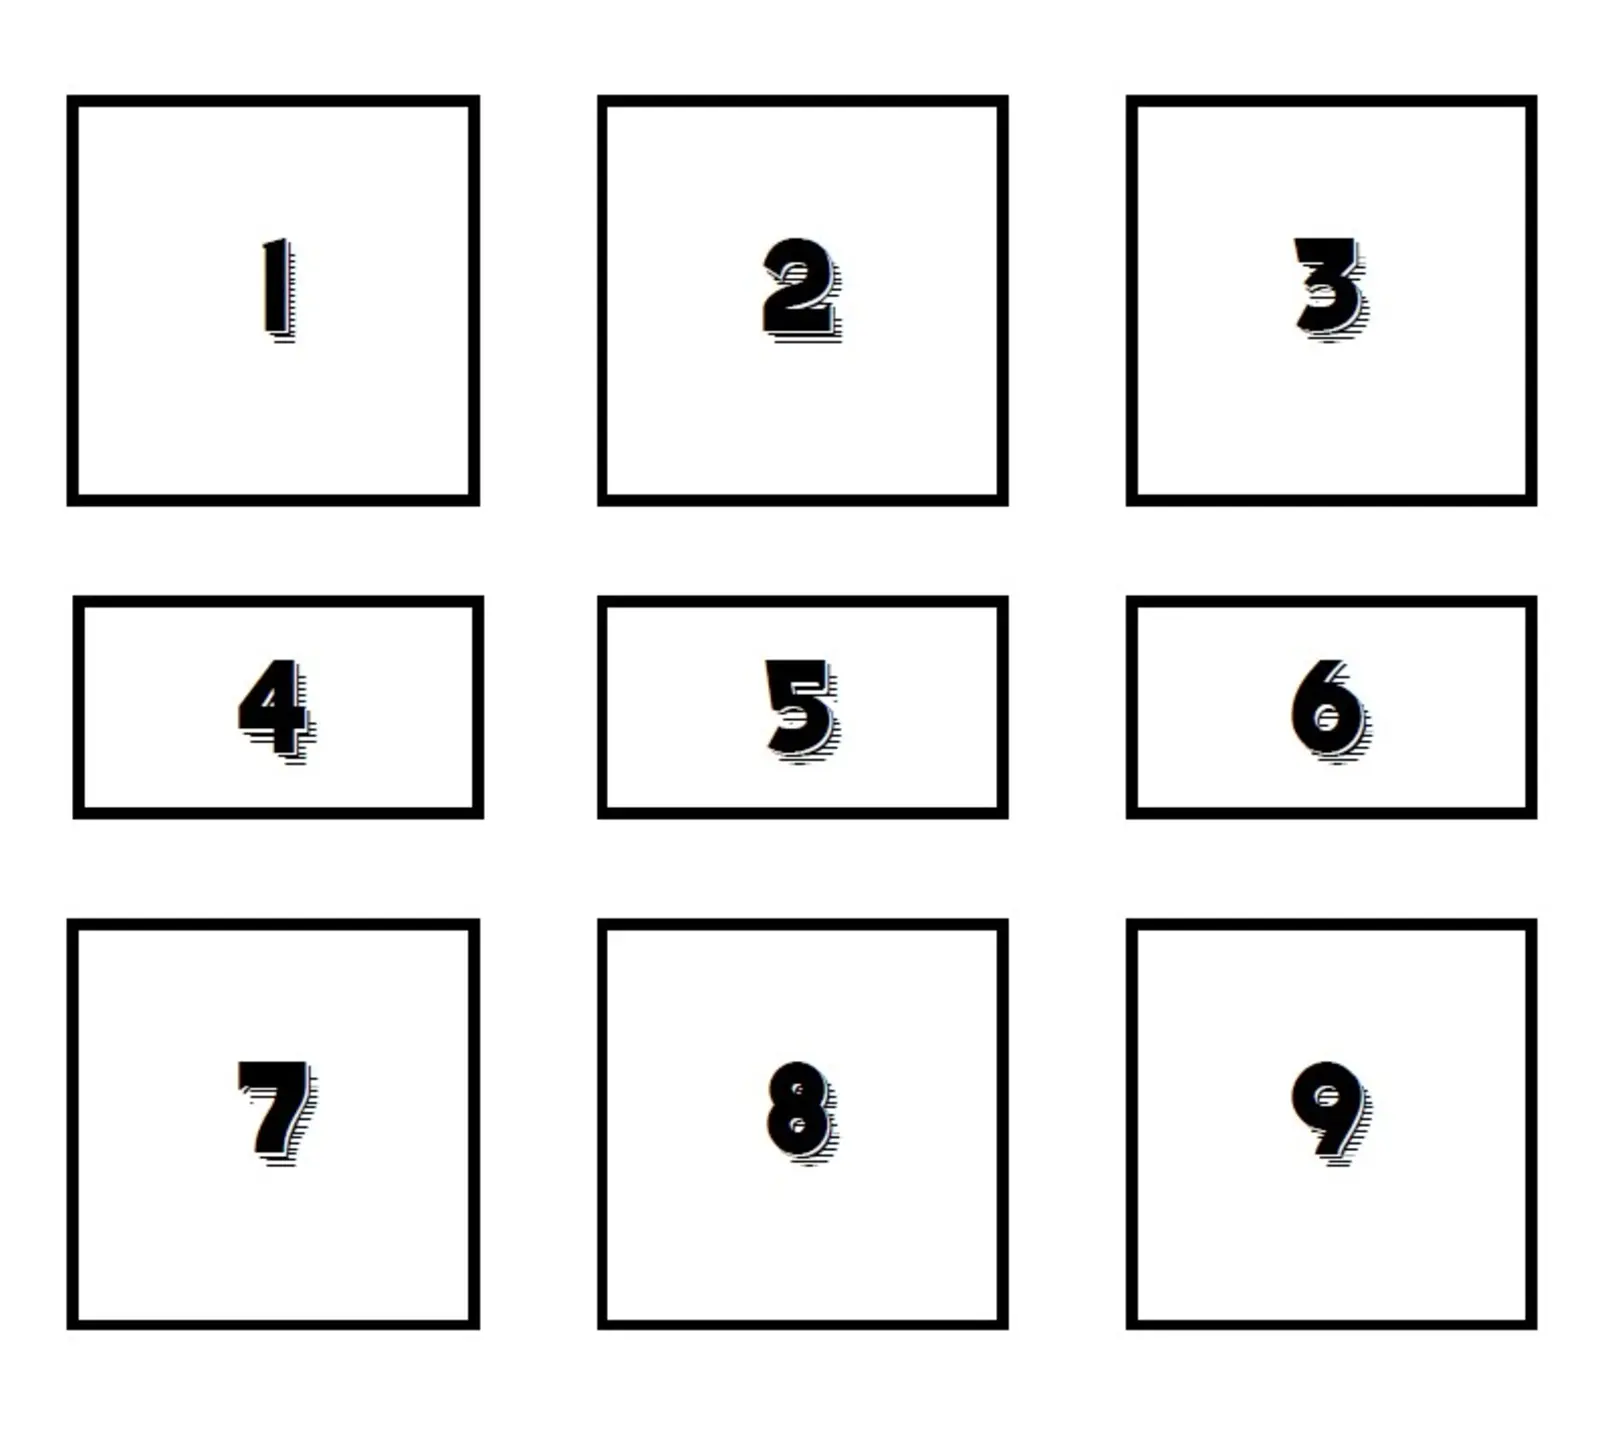 Cuadrícula de nueve cuadros numerados del 1 al 9, con tres números por fila.